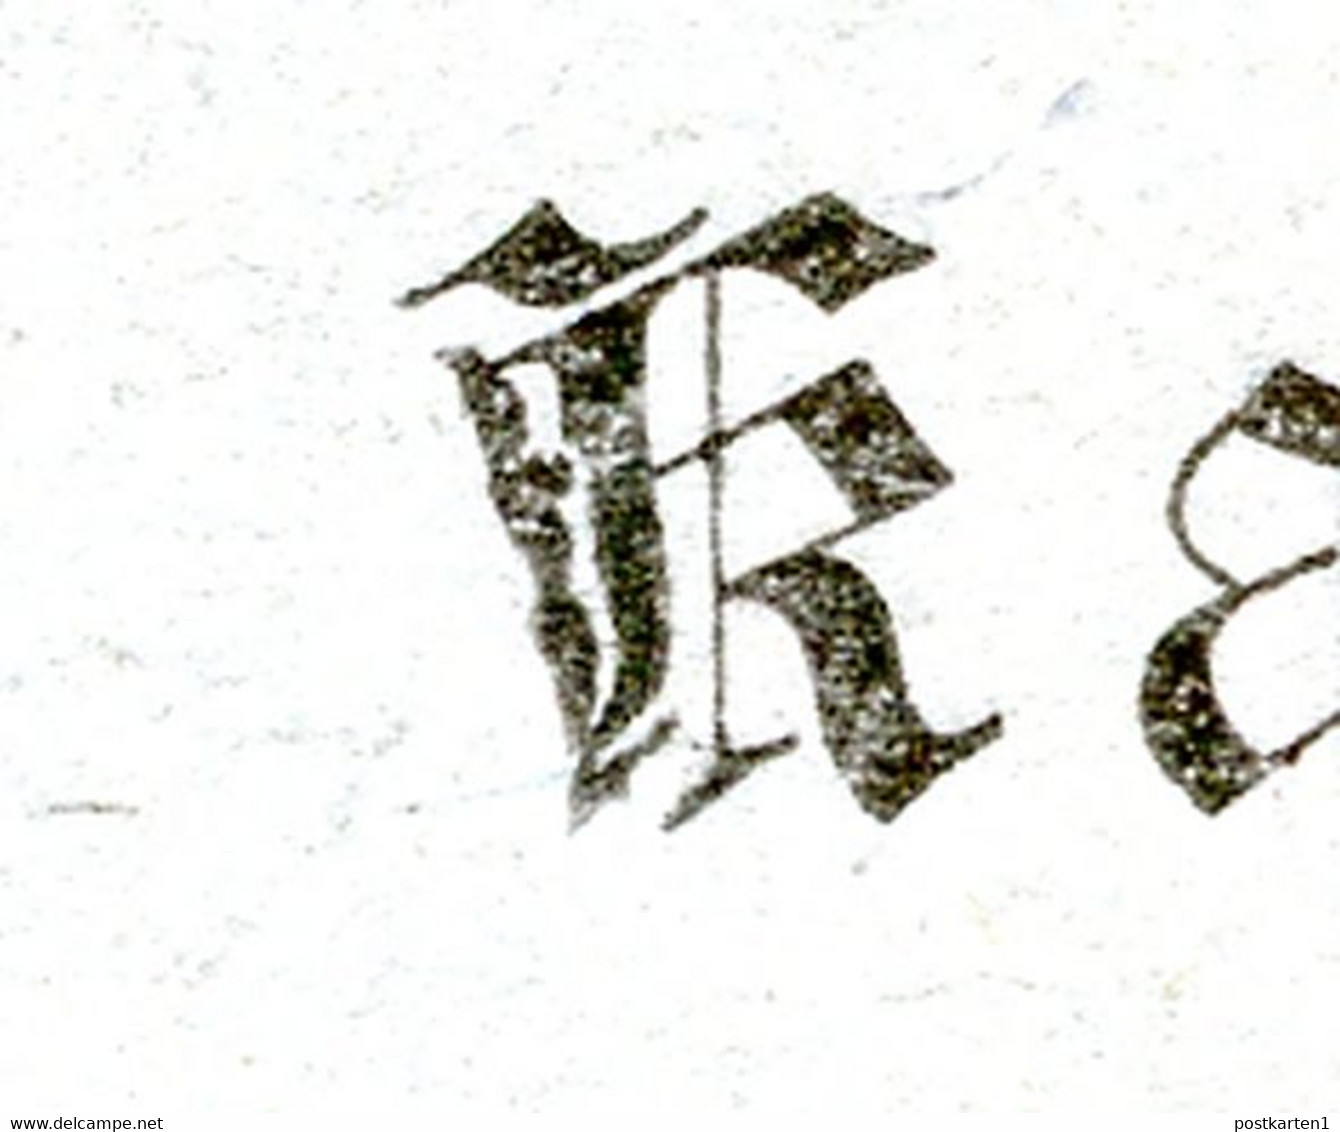 ÖSTERREICH Kartenbrief K28 Ascher K28b VERSTÜMMELTES K(ARTENBRIEF) 1890 - Cartes-lettres